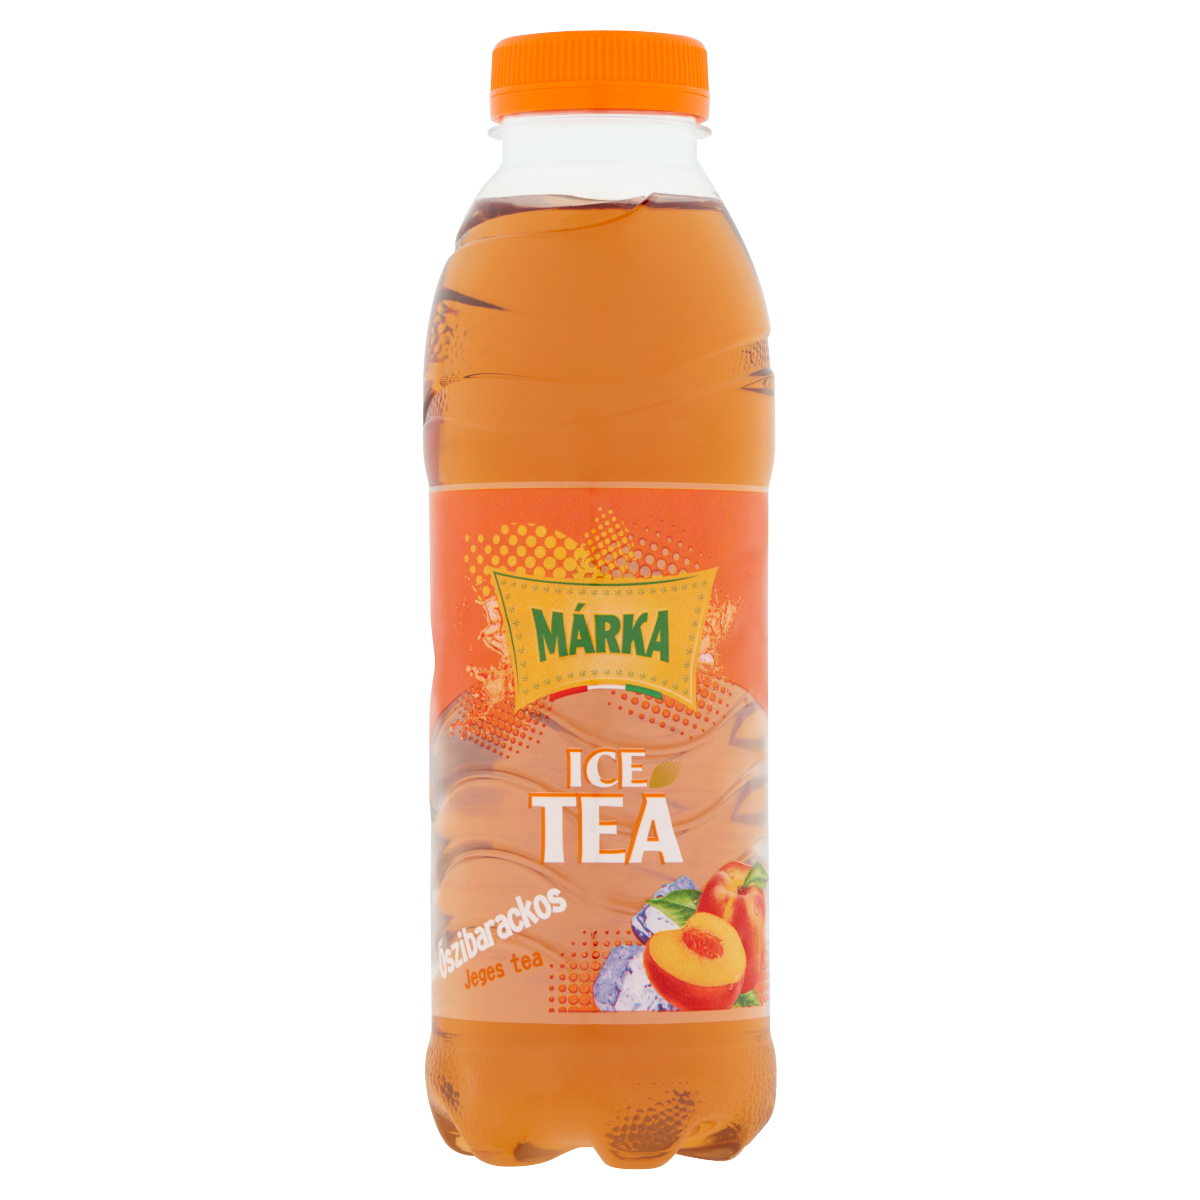 ICE TEA CU GUST DE PIERSICI MARKA 500ML